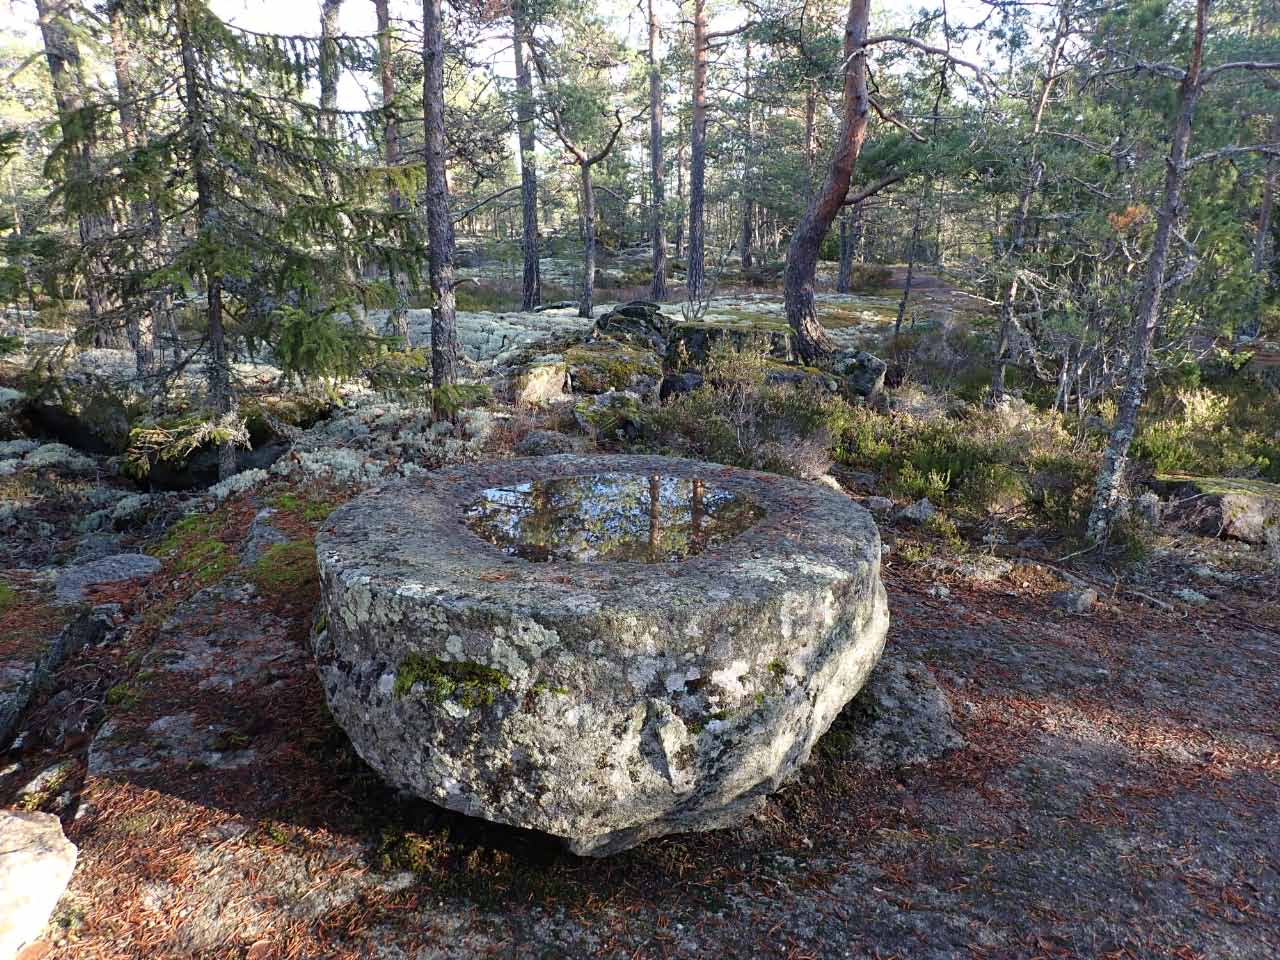 Kuva: Puolivalmis myllynkivi kalliolla louhoksen reunalla. Lahden museot / Päijät-Hämeen alueellinen vastuumuseo. CC BY 4.0 Hannu Poutiainen 7.11.2020